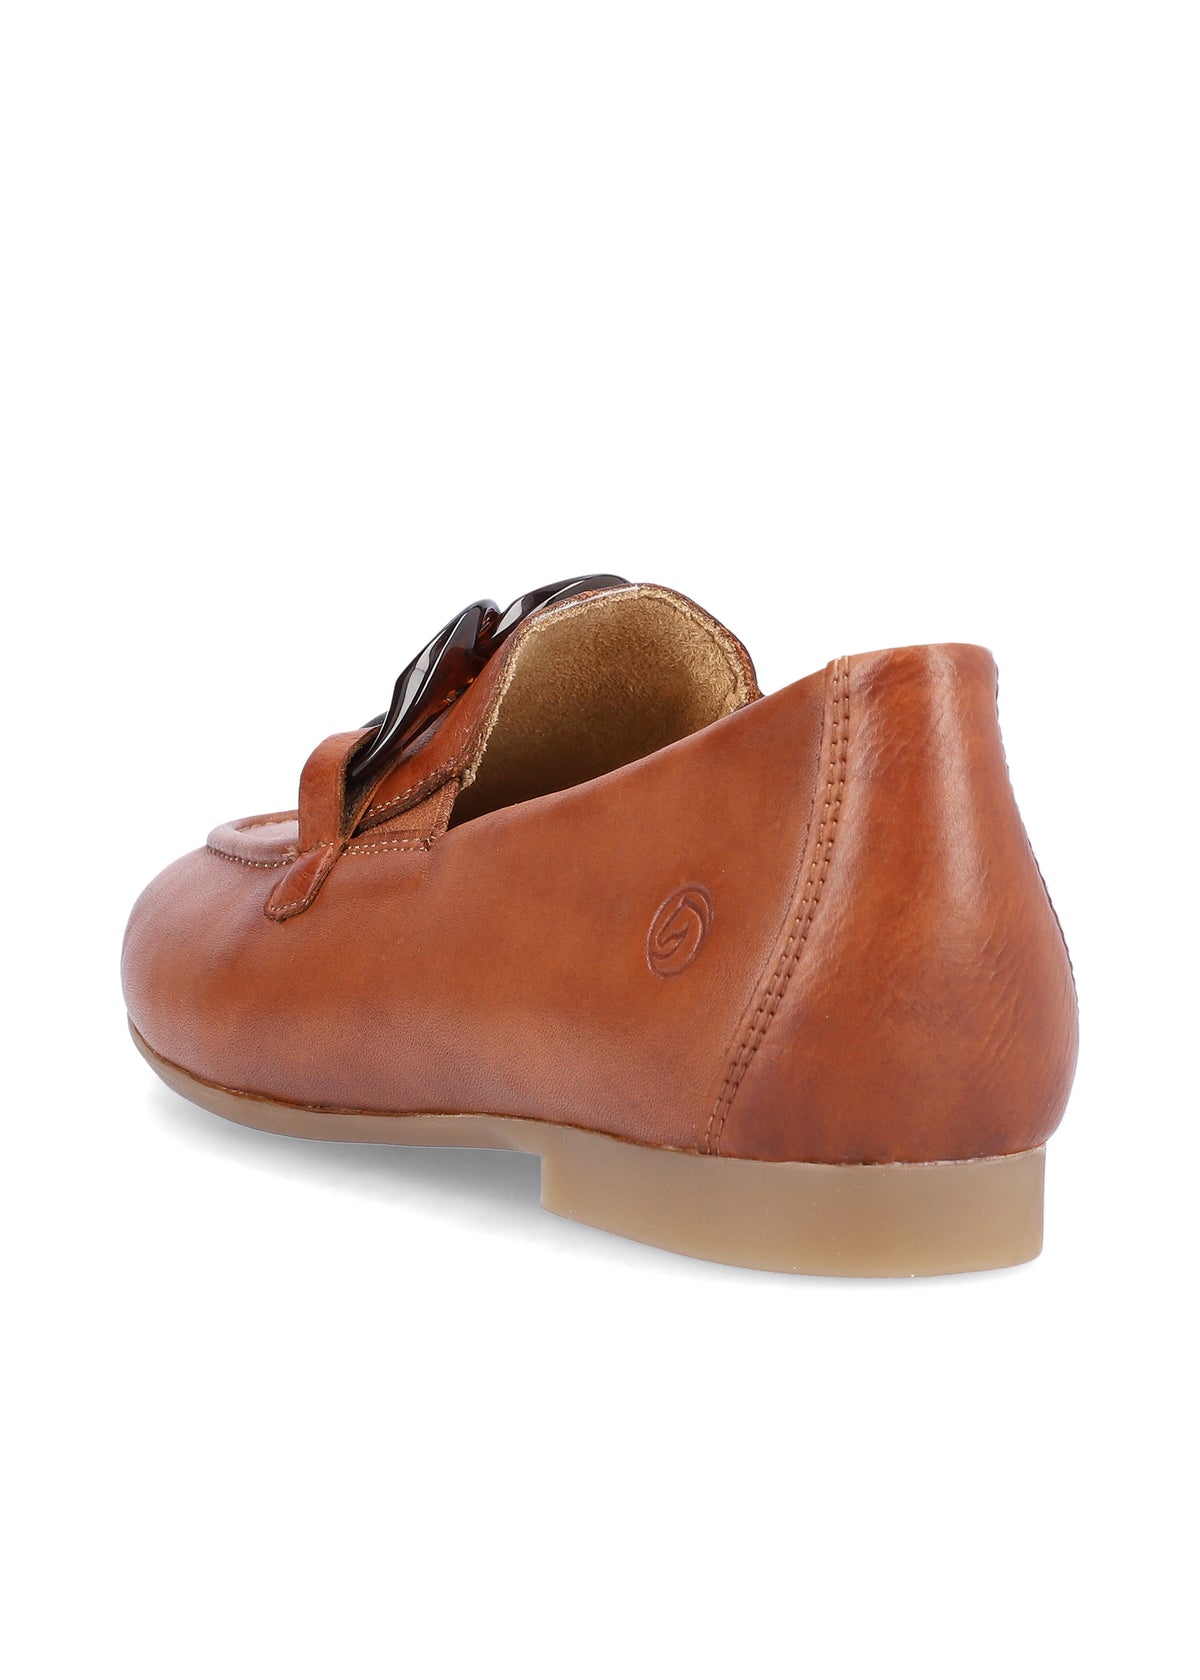 Loafers - brunt toppläder, spänndekoration